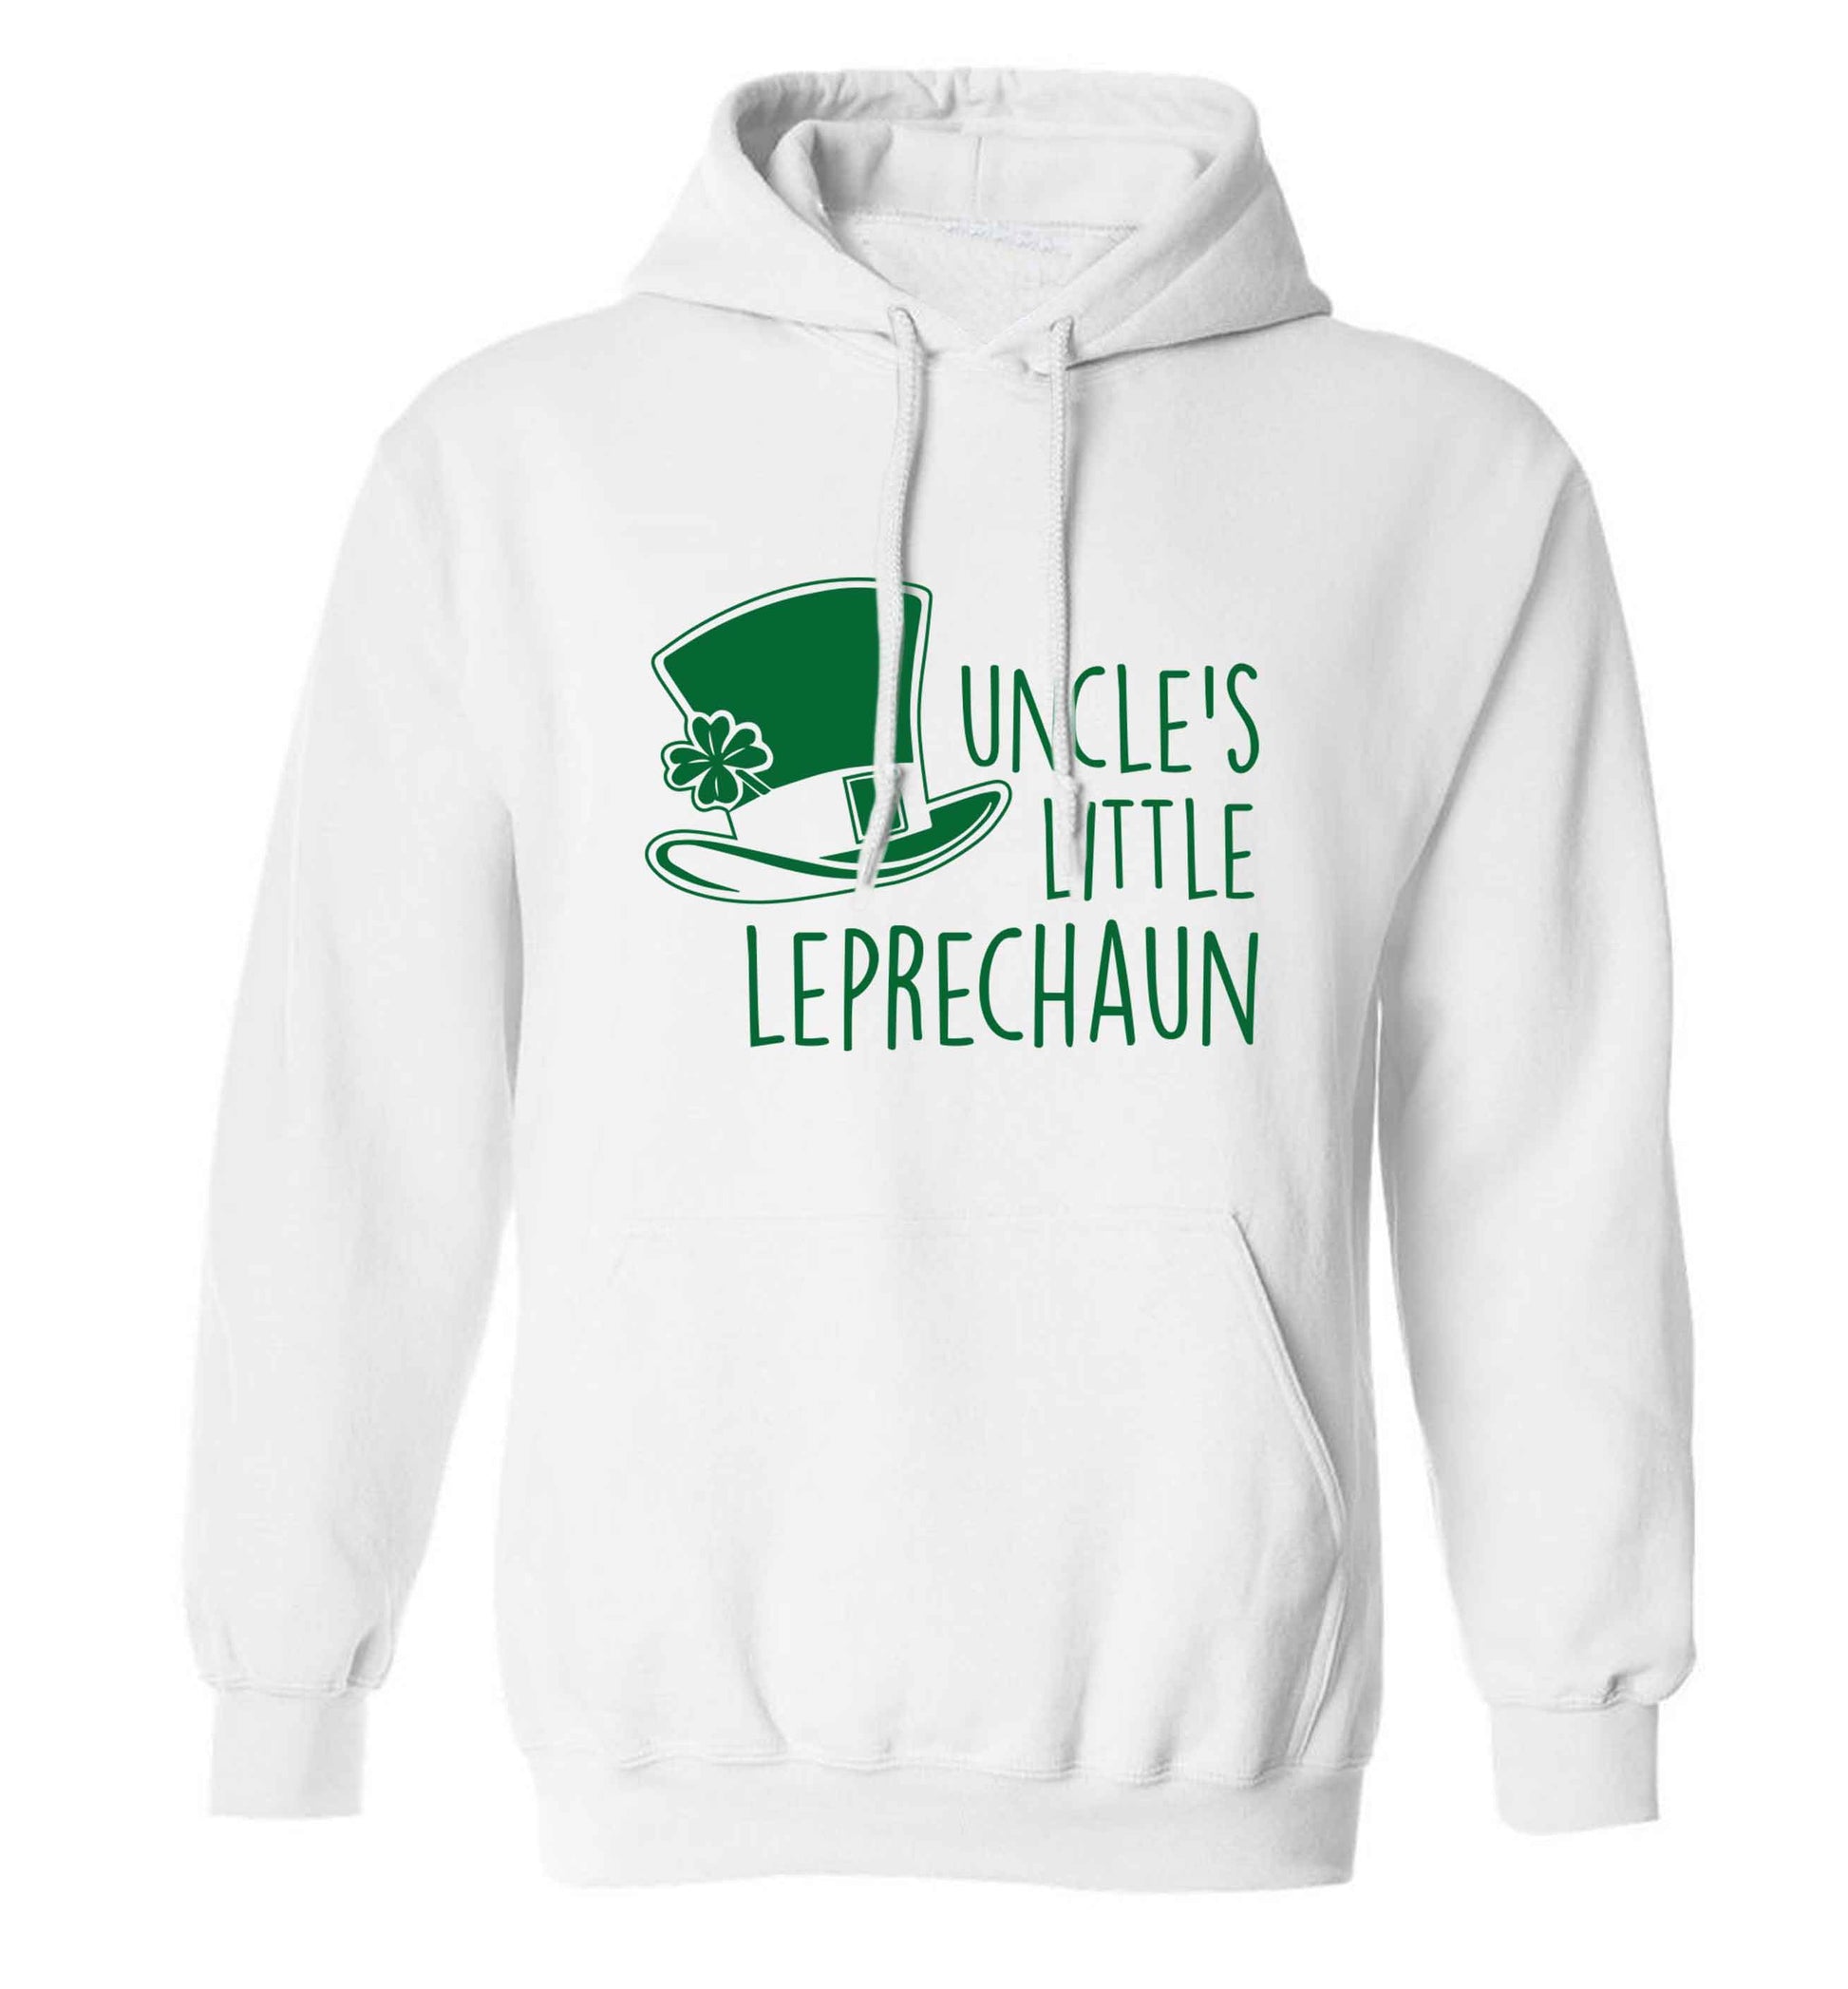 Uncles little leprechaun adults unisex white hoodie 2XL